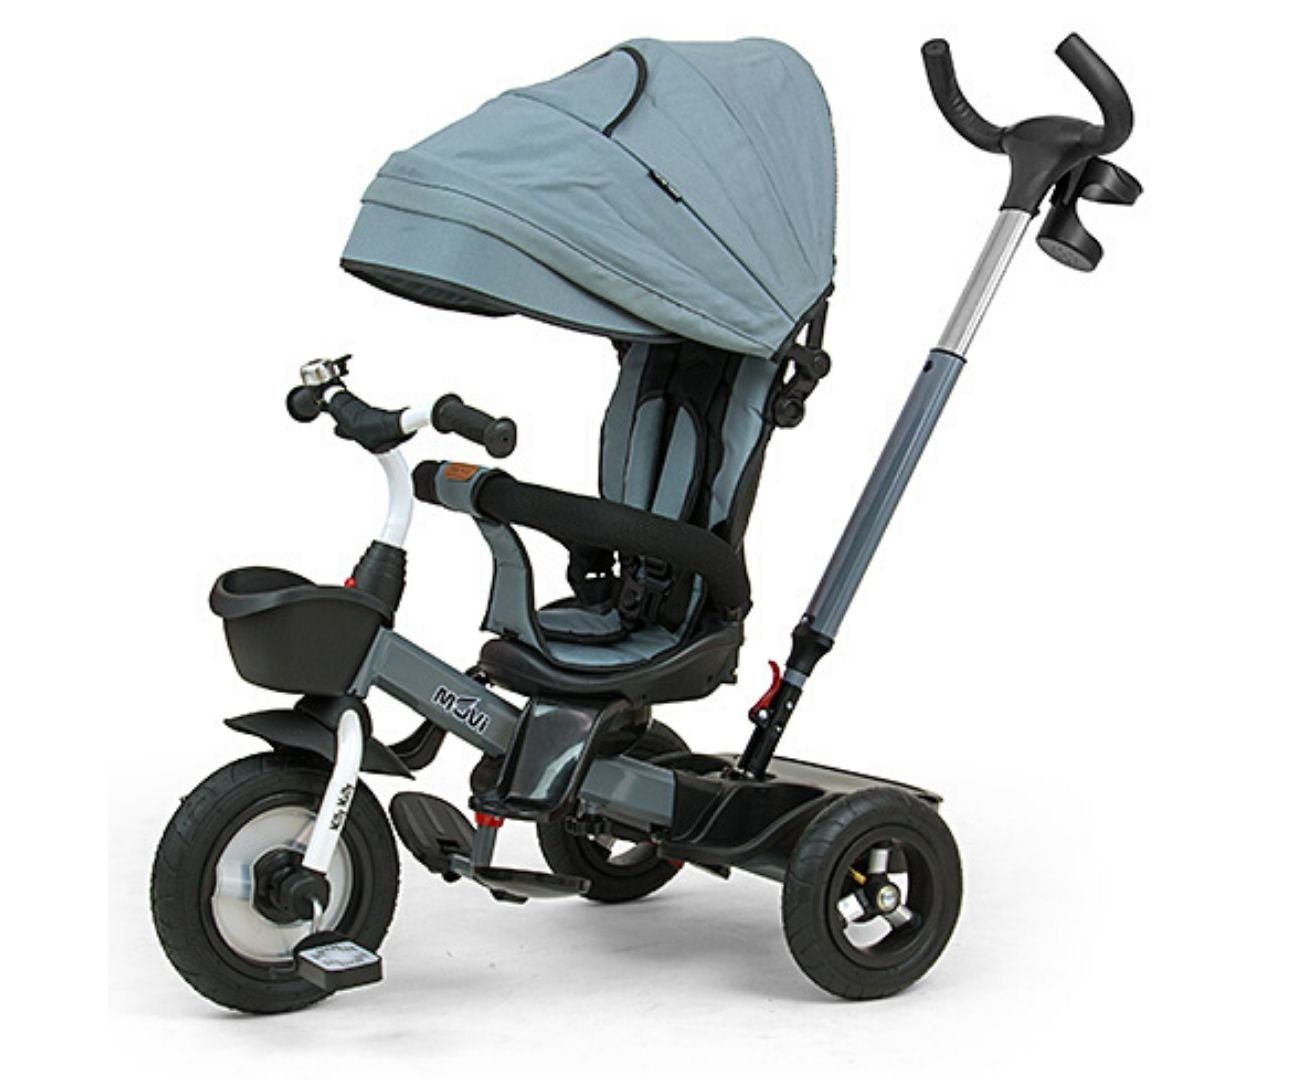 LeNoSa Dreirad 5in1 Deluxe Kinderdreirad • Sitz 360° drehbar • Lufträder, Fünf-Punkt-Sicherheitsgurt • Freilauffunktion • Stahlrahmen